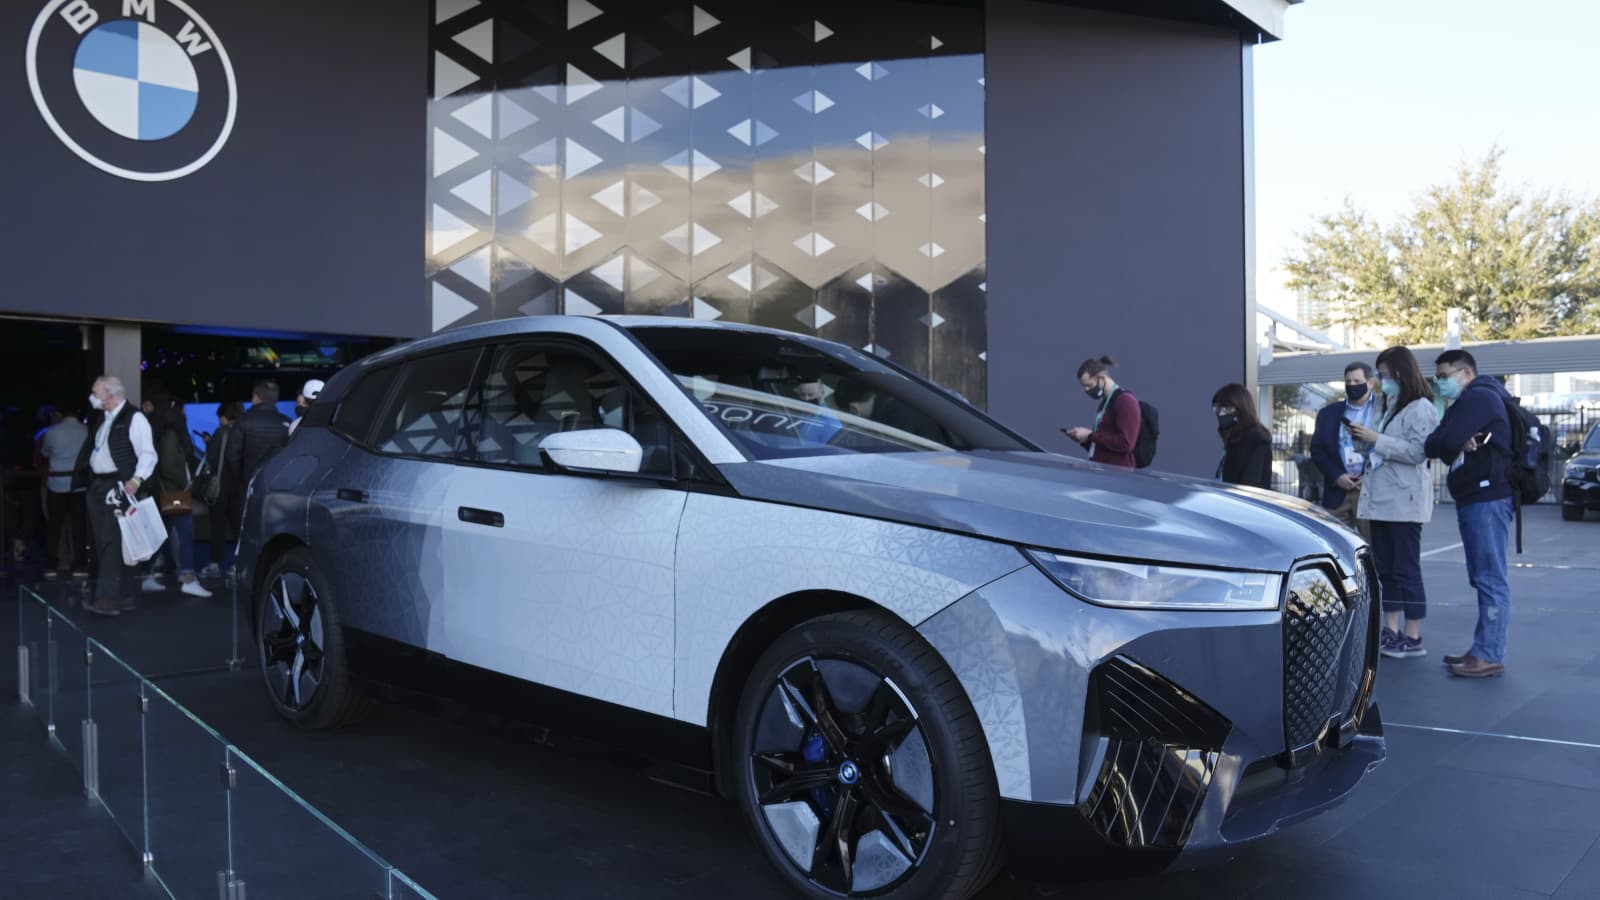 BMW's new iX Flow concept car can change colors